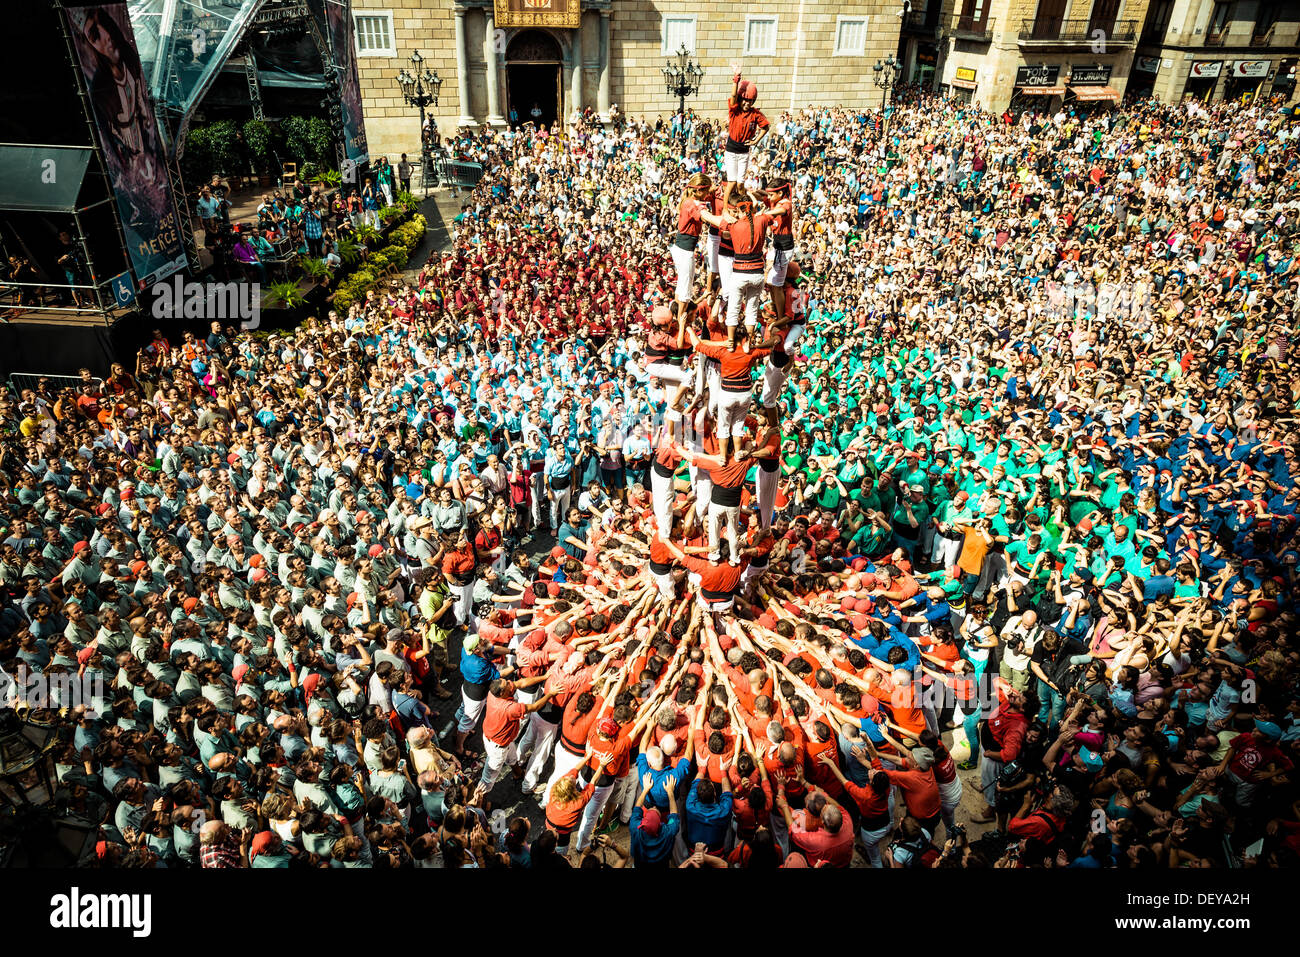 Barcelone, Espagne. Sep 24, 2013 : l'Castellers de Barcelone construire une tour humaine en face de l'hôtel de ville de Barcelone au cours de la ville, festival de la Merce, 2013 © matthi/Alamy Live News Banque D'Images